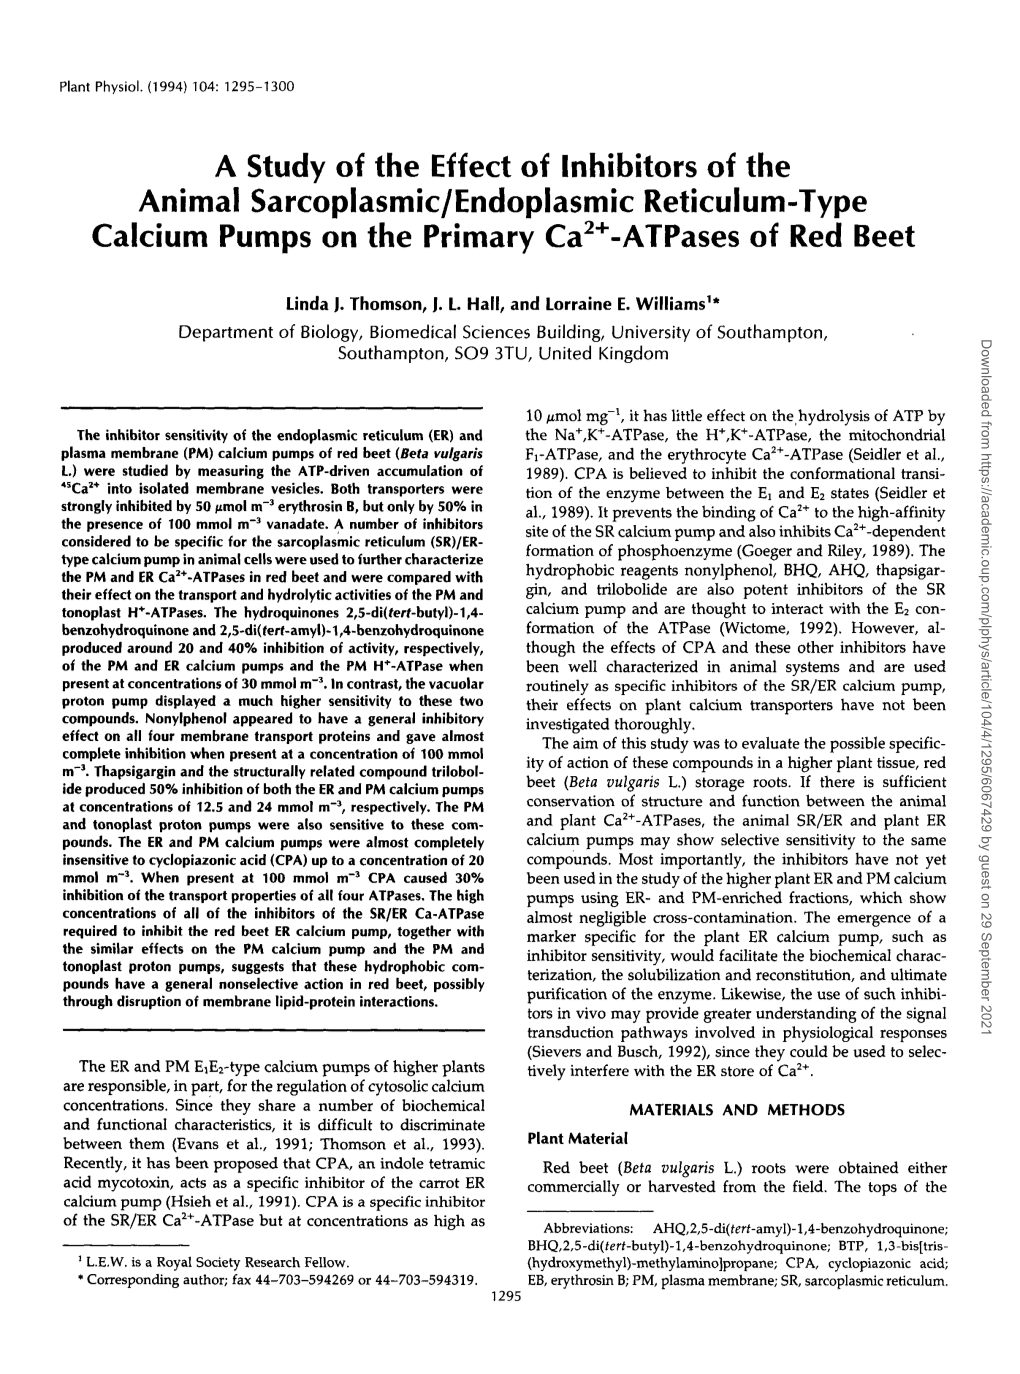 Animal Sarcoplasmic/Endoplasmic Reticulum-Type Calcium Pumps on the Primary Ca*+-Atpases of Red Beet